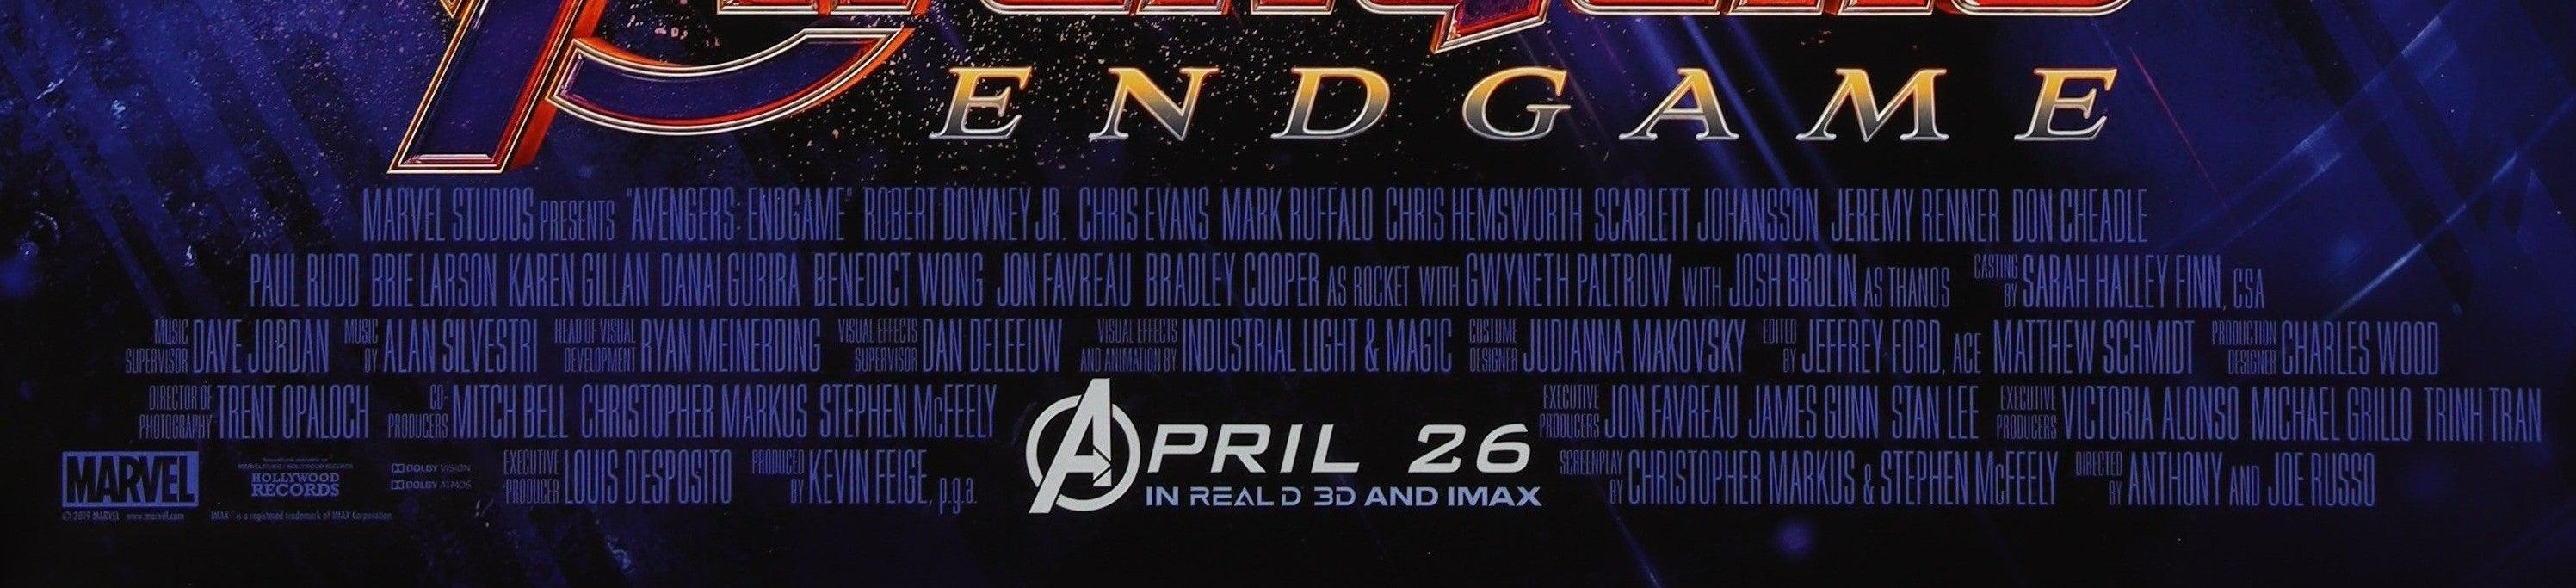 Avengers-Endgame-Vintage-Movie-Poster-Original-1-Sheet-27x41~2.jpg